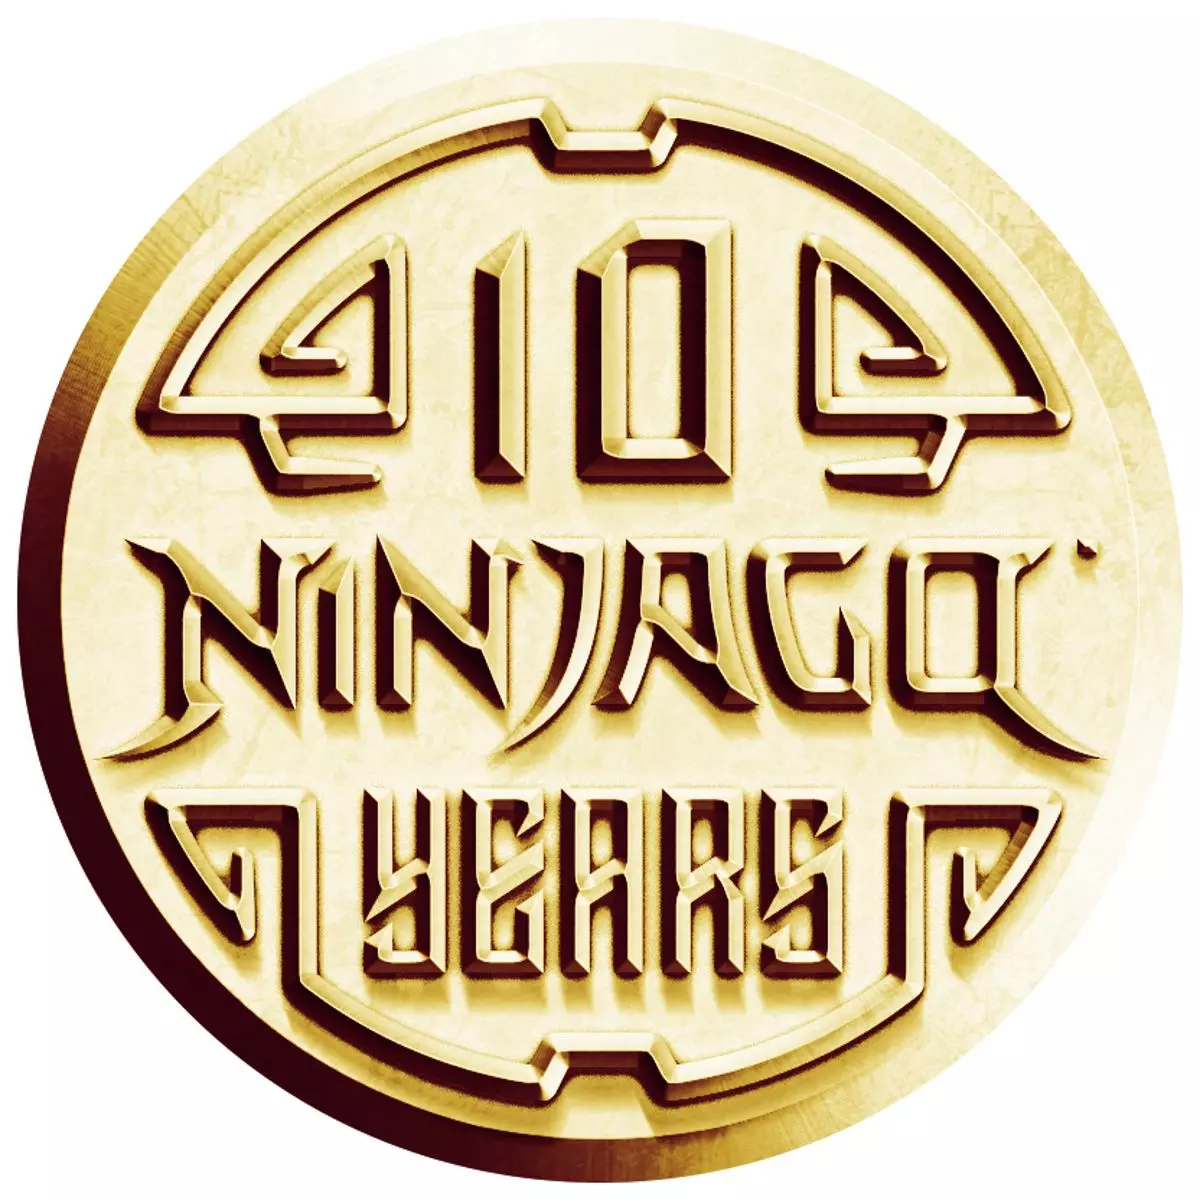 10 years of ninjago gold callout